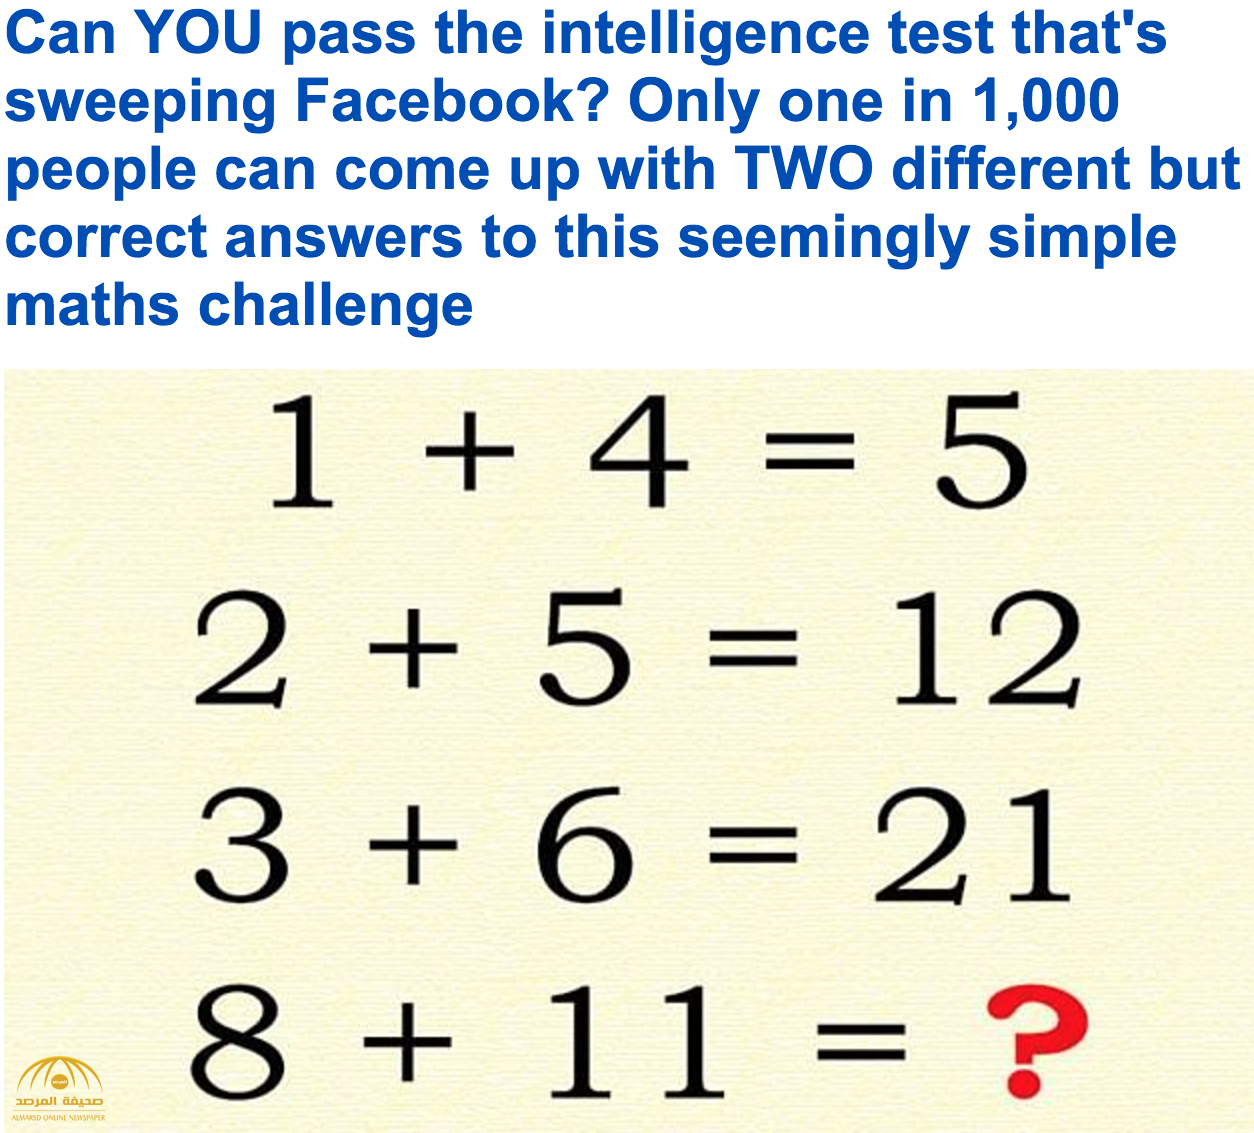 اختبارات الذكاء على الفيسبوك..شخص واحد من ضمن 1000 يستطيع الإجابة المحتملة الثانية للاختبار!